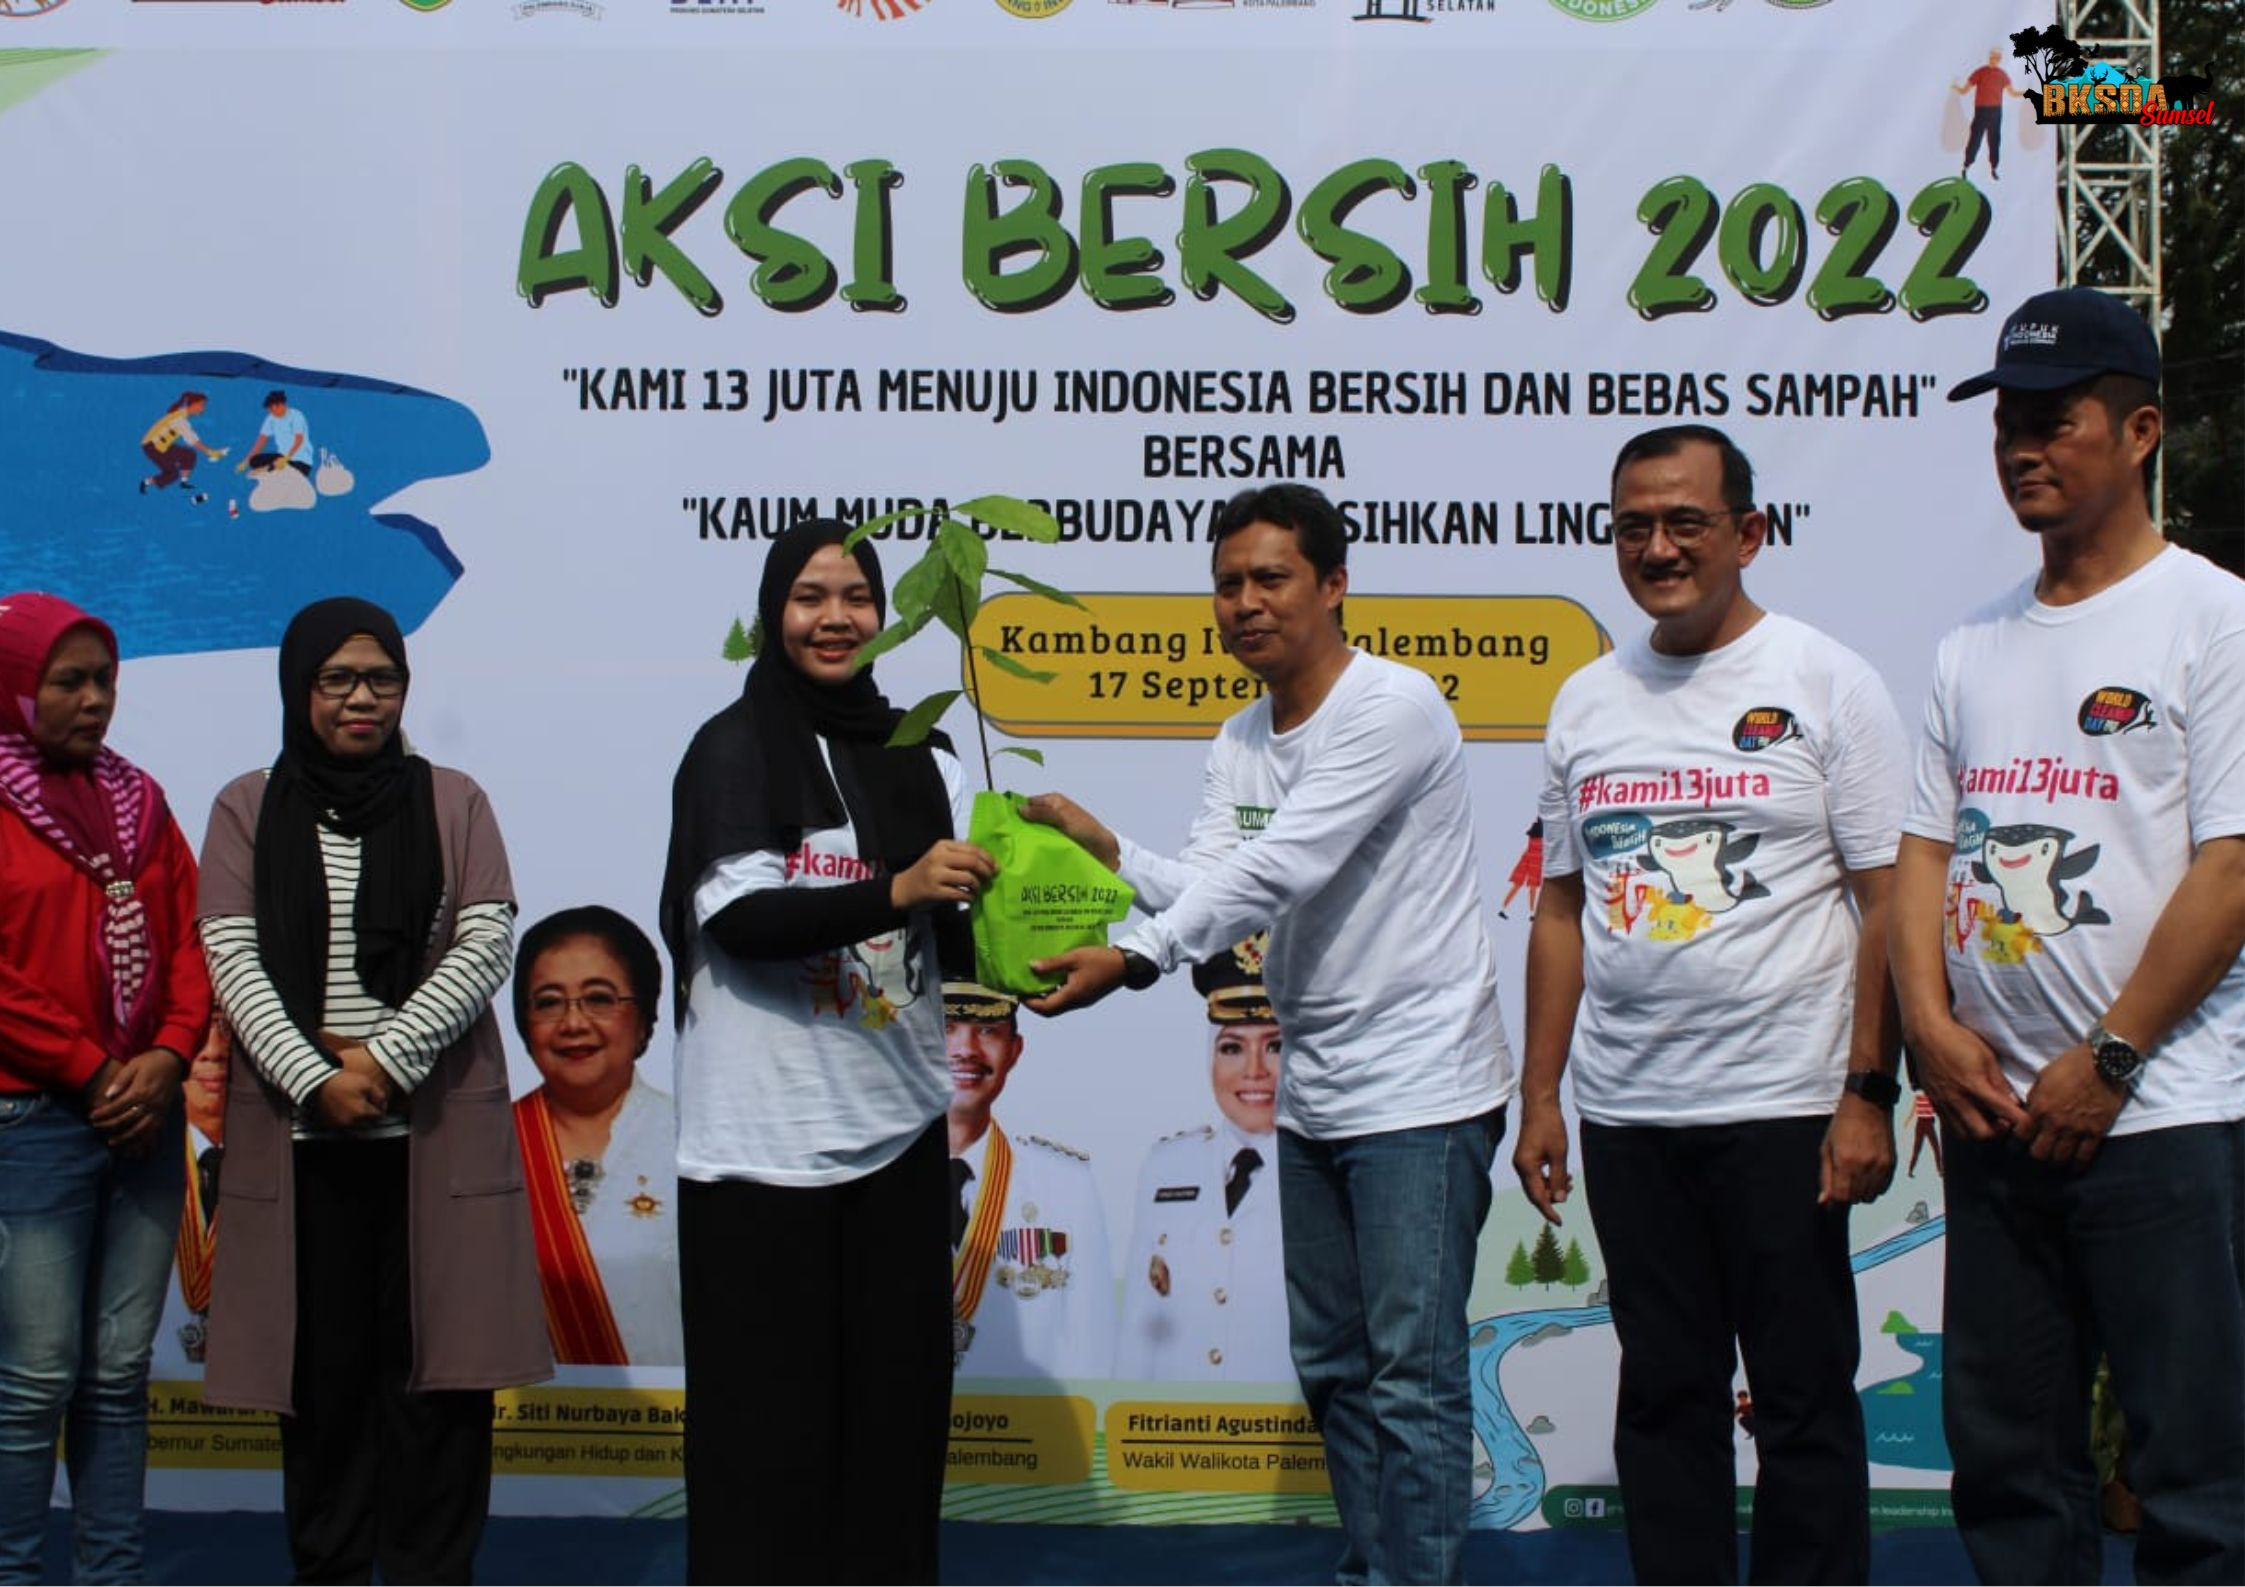 Peringati World Cleanup Day 2022, BKSDA Sumsel Dukung Aksi Bersih Serentak 12 Titik Se-Indonesia